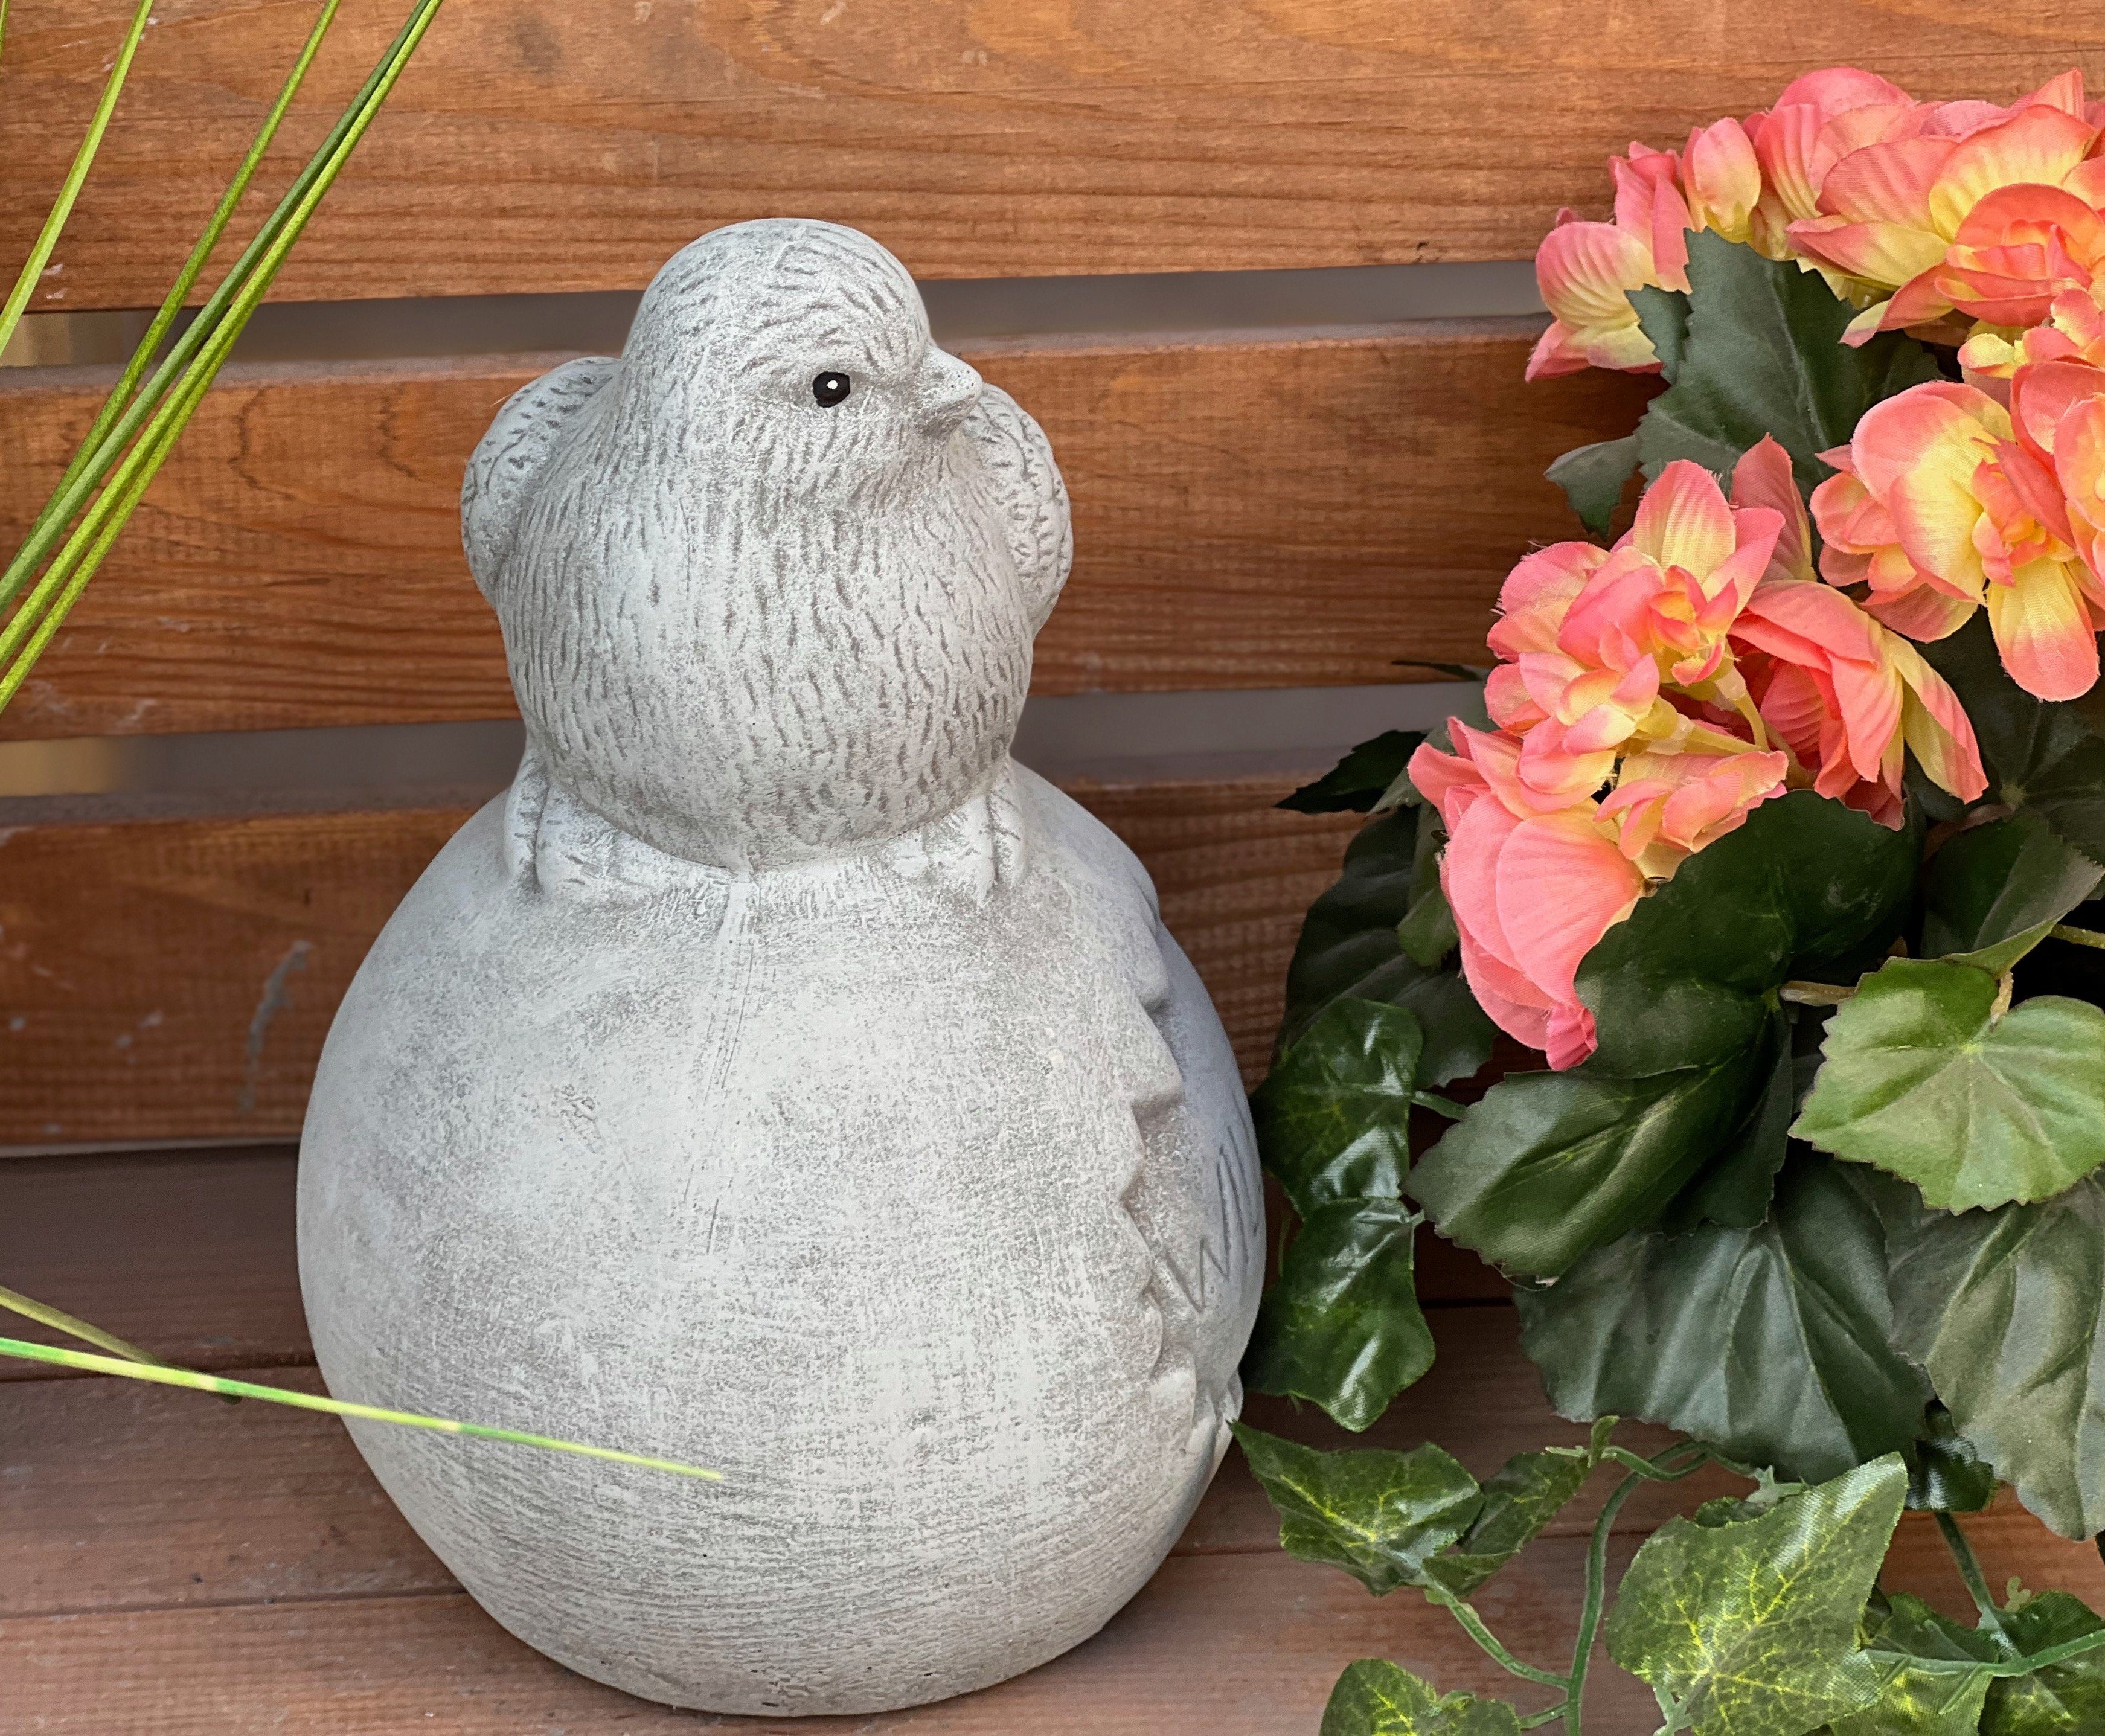 Stone and Style Gartenfigur Steinfigur frostfest Vogel "Willkommen", Kugel Steinguss auf